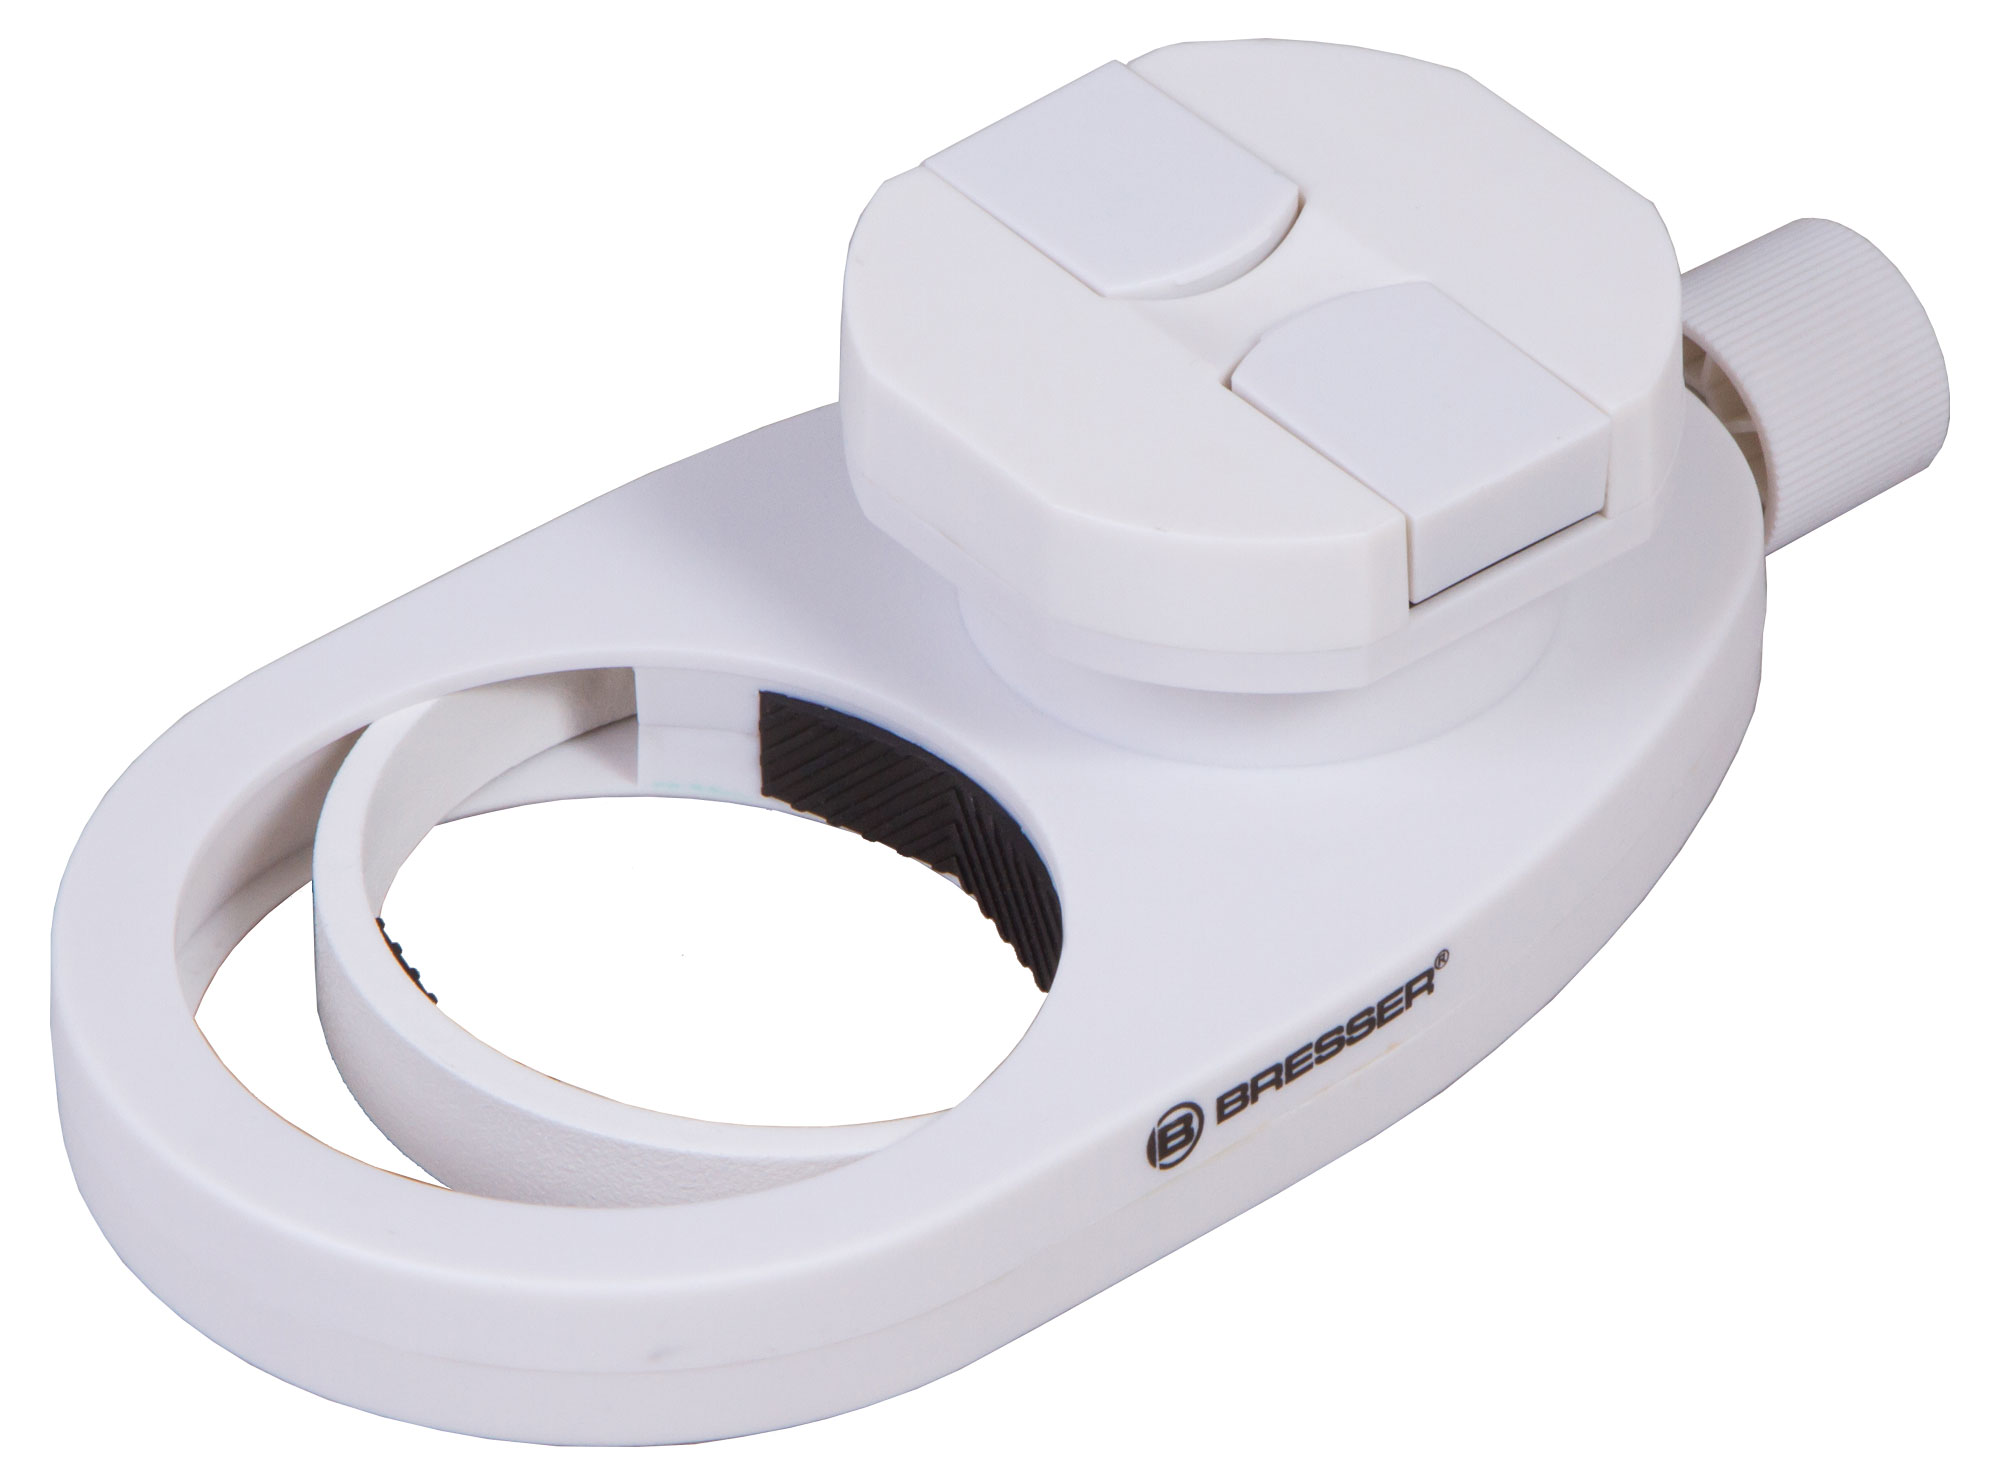 Адаптер для смартфона Bresser Для крепления смартфона к зрительной трубе, телескопу или микроскопу